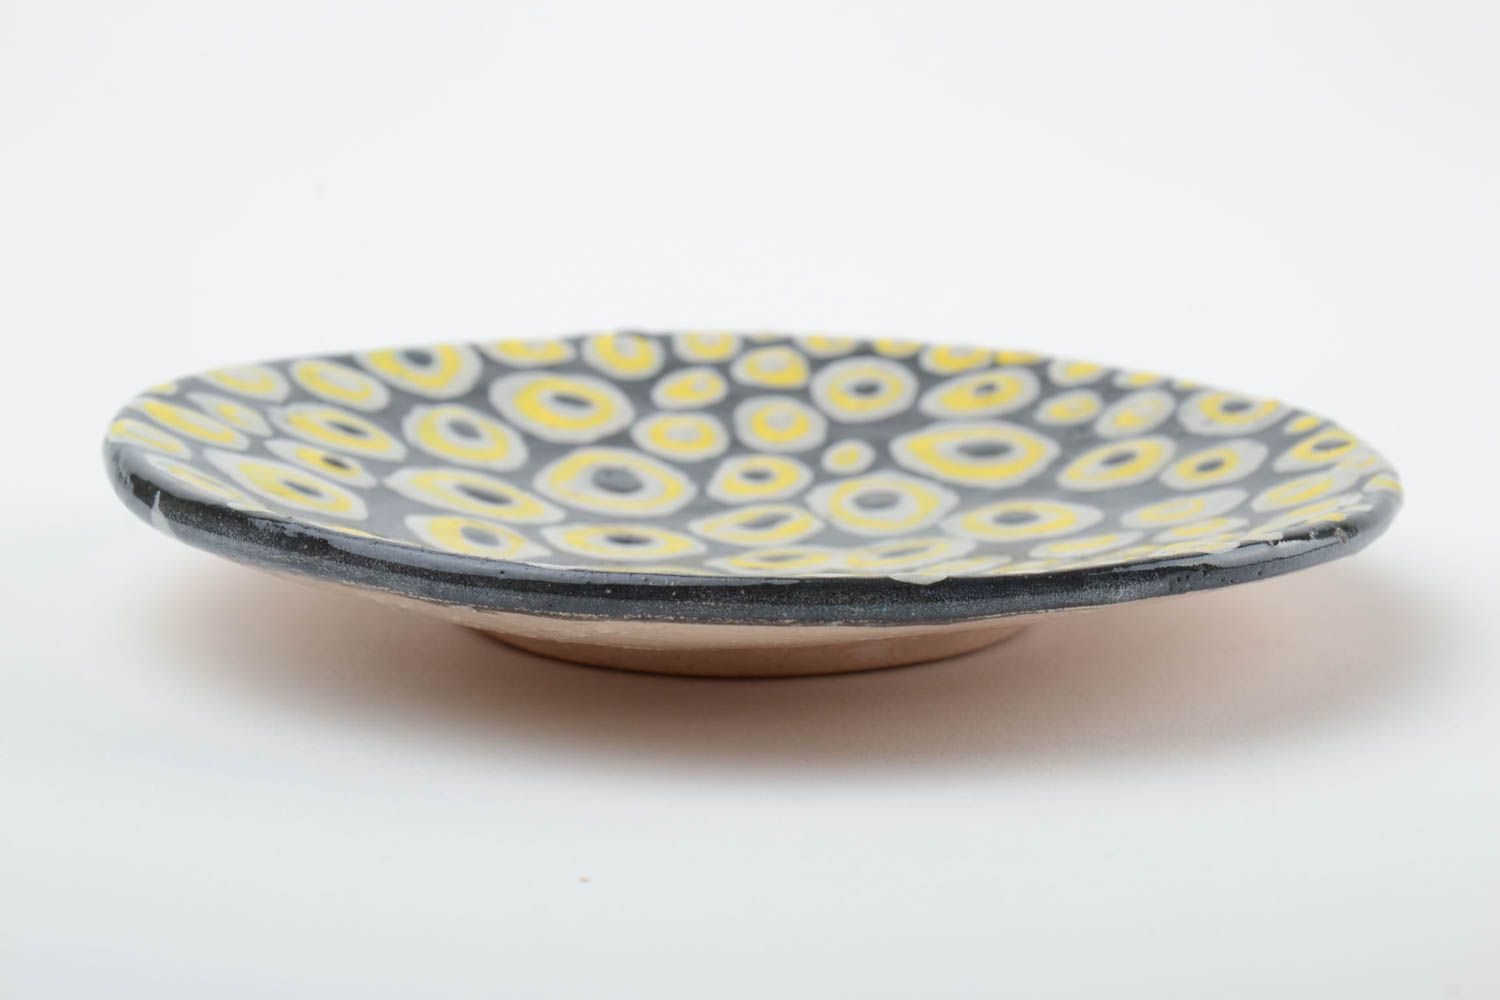 Handmade Keramik Untertasse mit Muster in Schwarz und Weiß klein schön glasiert foto 4